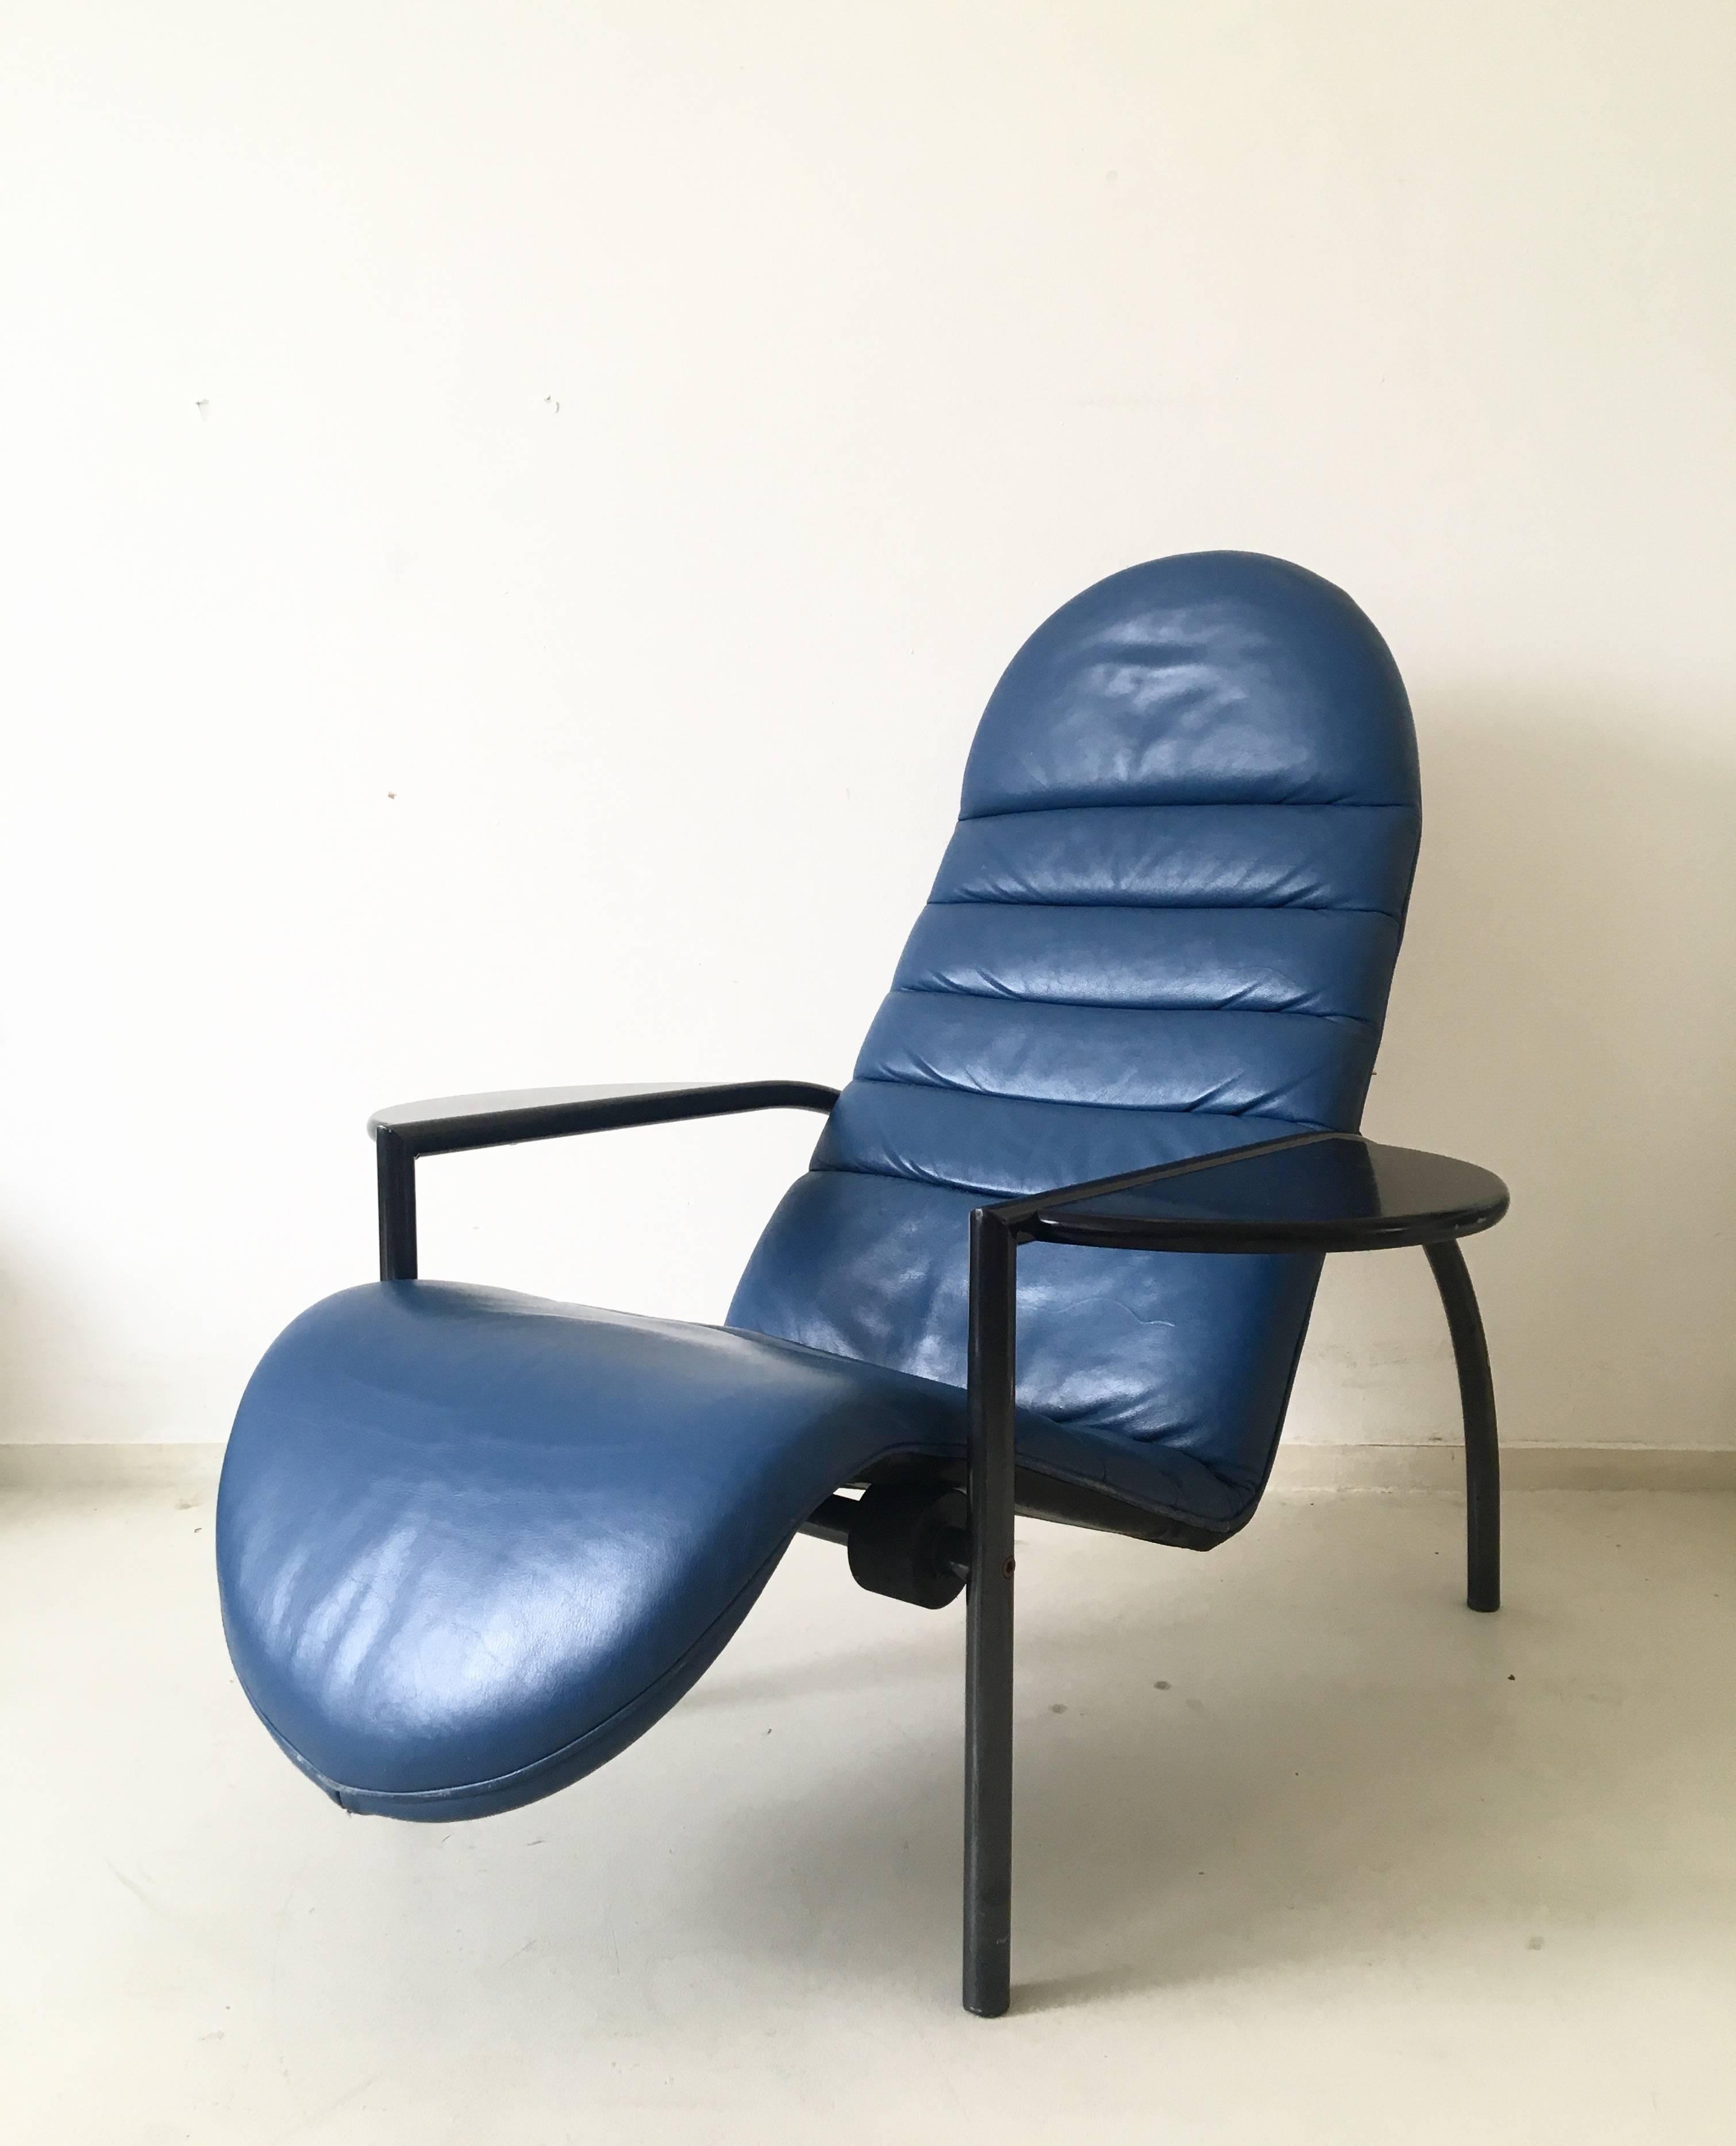 Extrem schwer zu finden ist dieser so genannte 'Noe'-Stuhl von Moroso. (Bestätigt durch das Moroso-Team).

Der Stuhl hat ein Metallgestell mit einem blauen Ledersitz und Armlehnen aus Holz, die sich leicht als Tische verwenden lassen.

Dank eines